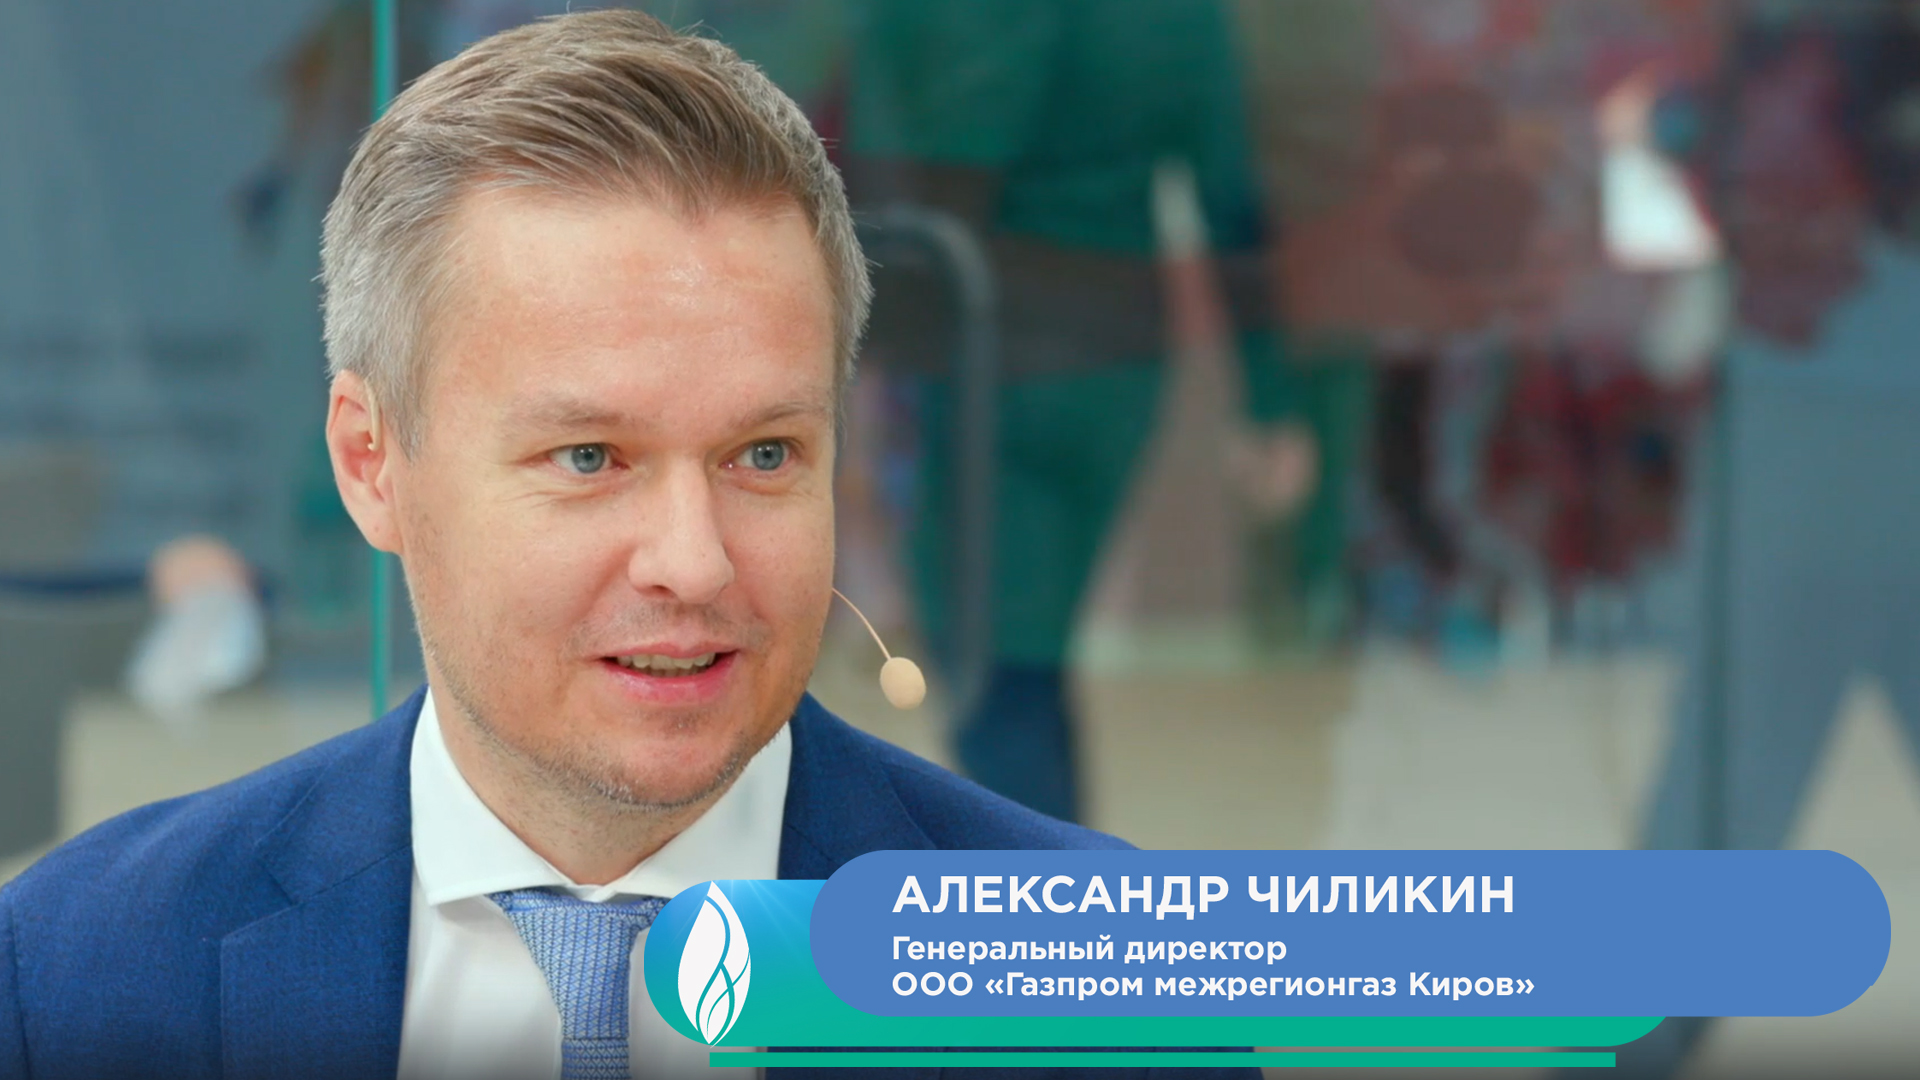 Александр Чиликин, генеральный директор ООО «Газпром межрегионгаз Киров»